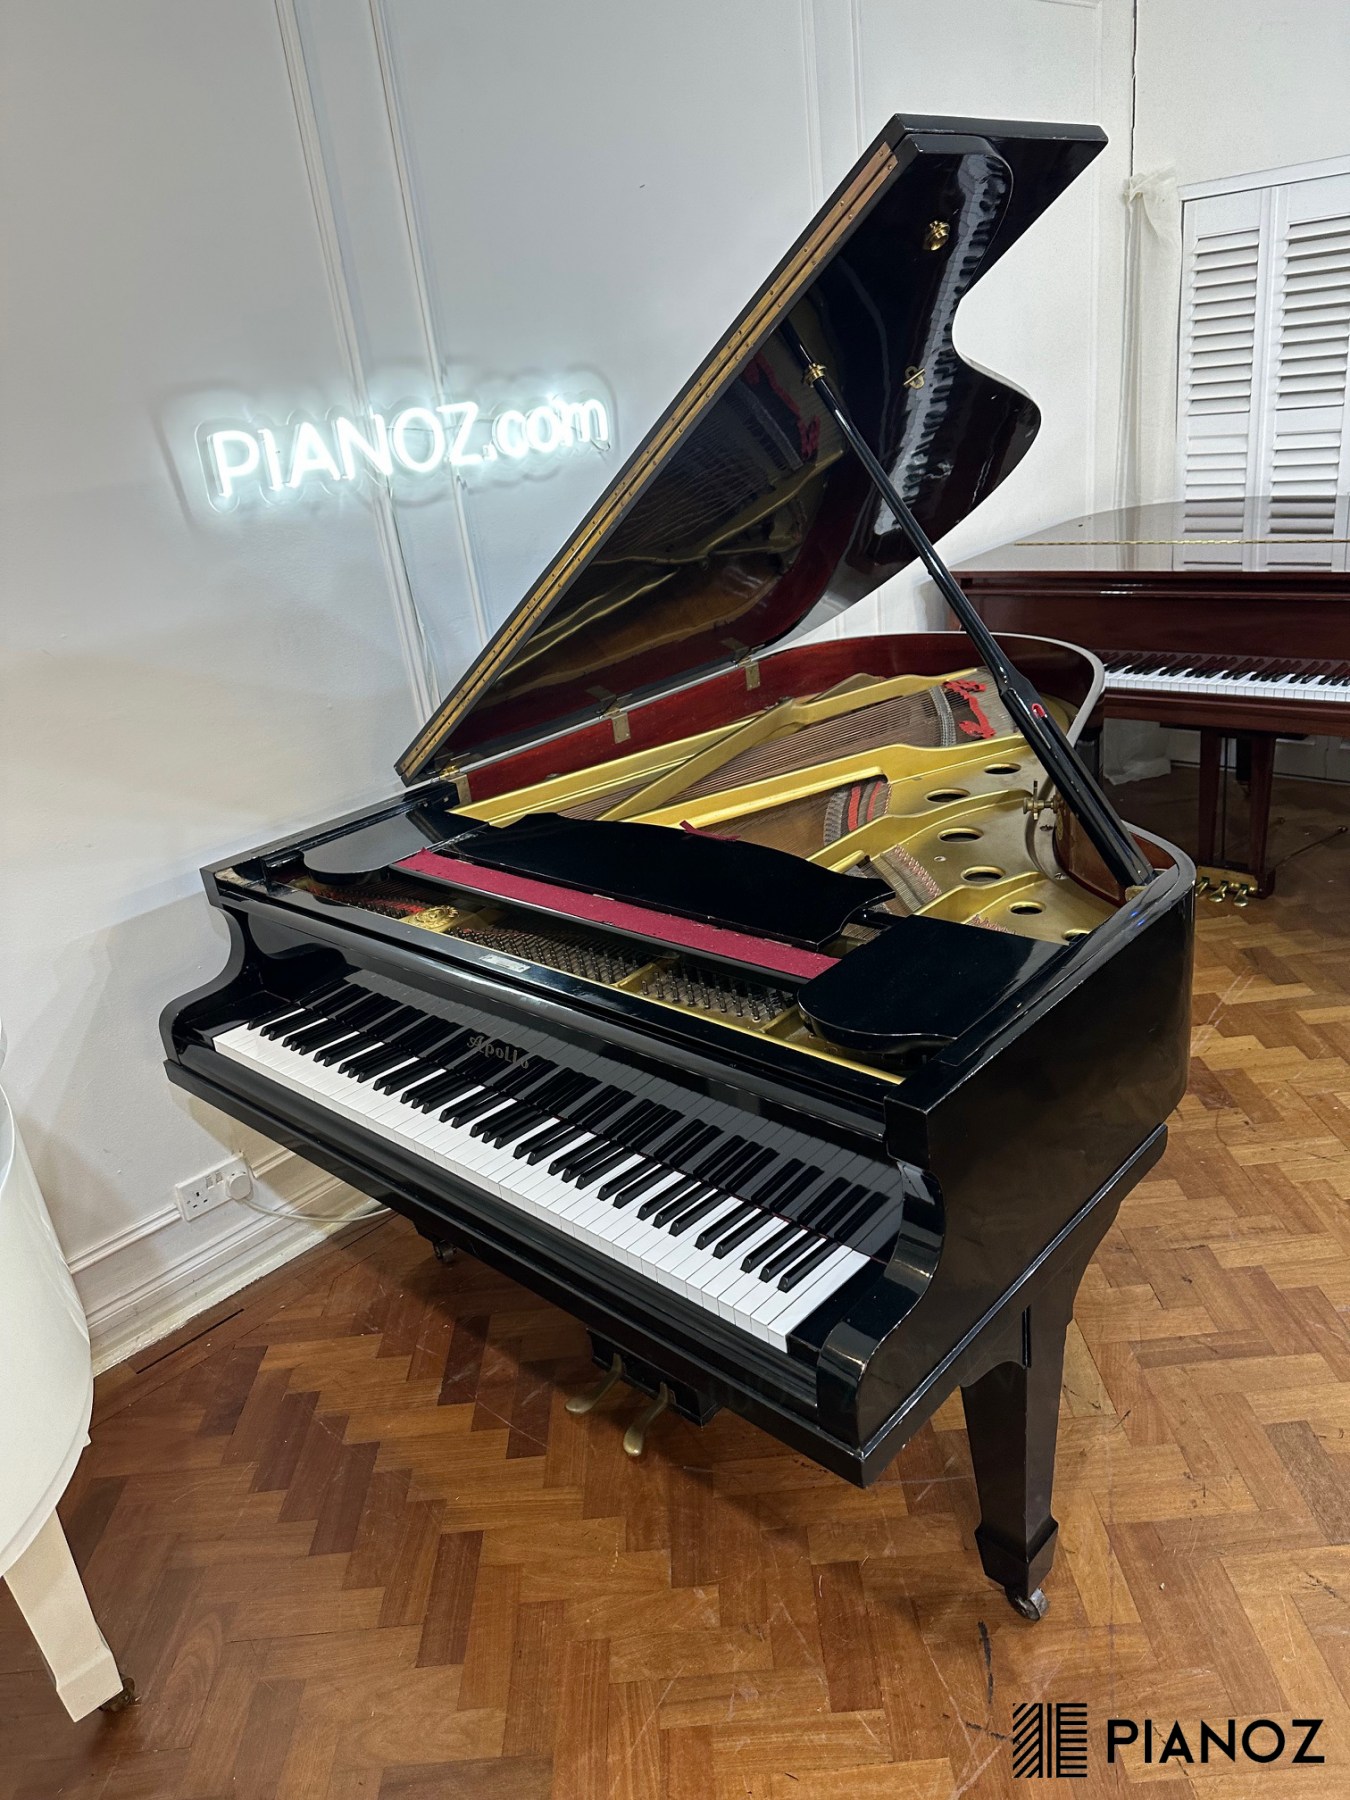 Apollo Japanese Grand Piano piano for sale in UK